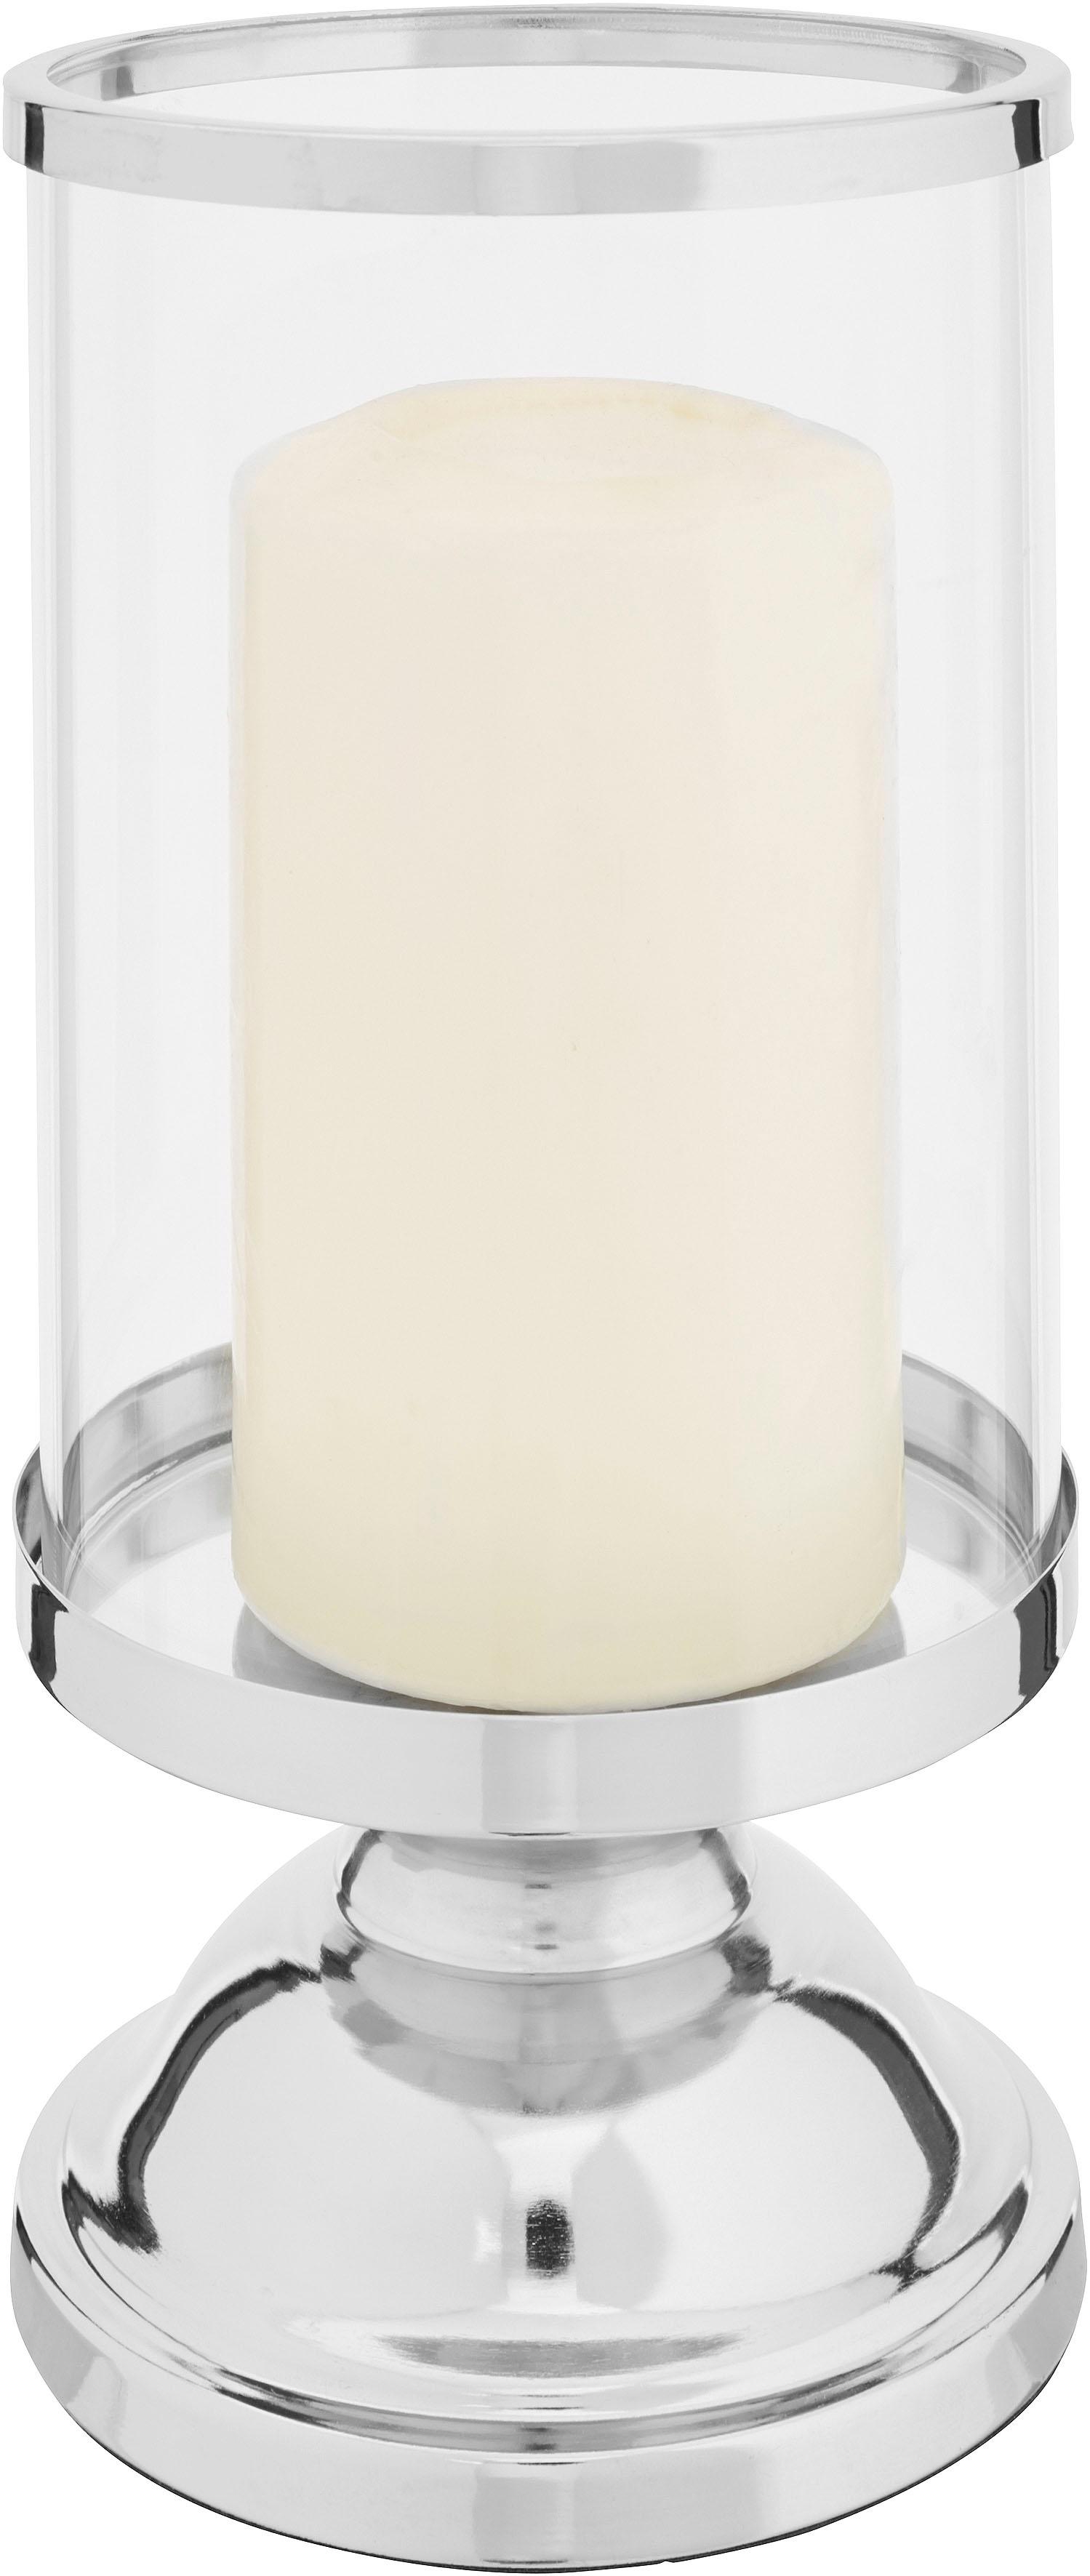 Fernet Branca Teelicht Glas Windlicht Kerzenhalter Glas Metall 513